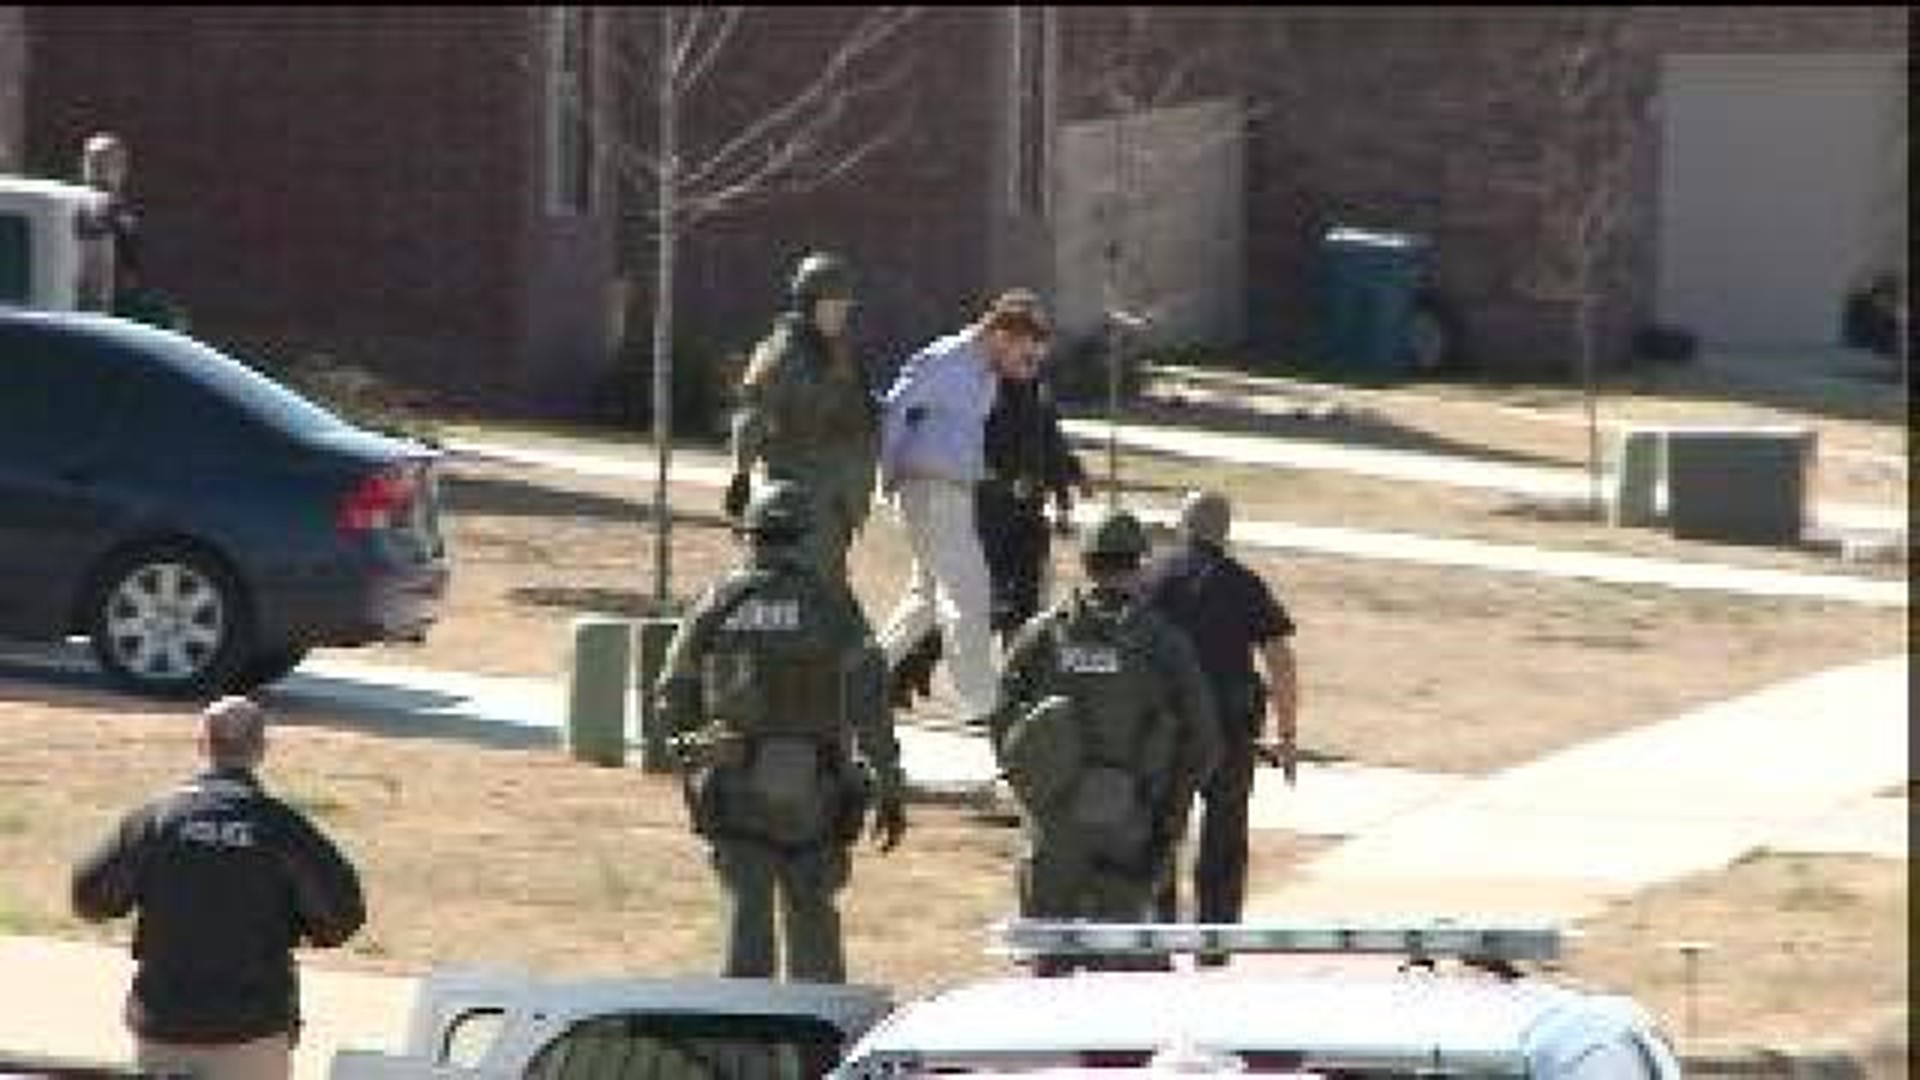 Man Arrested After Standoff